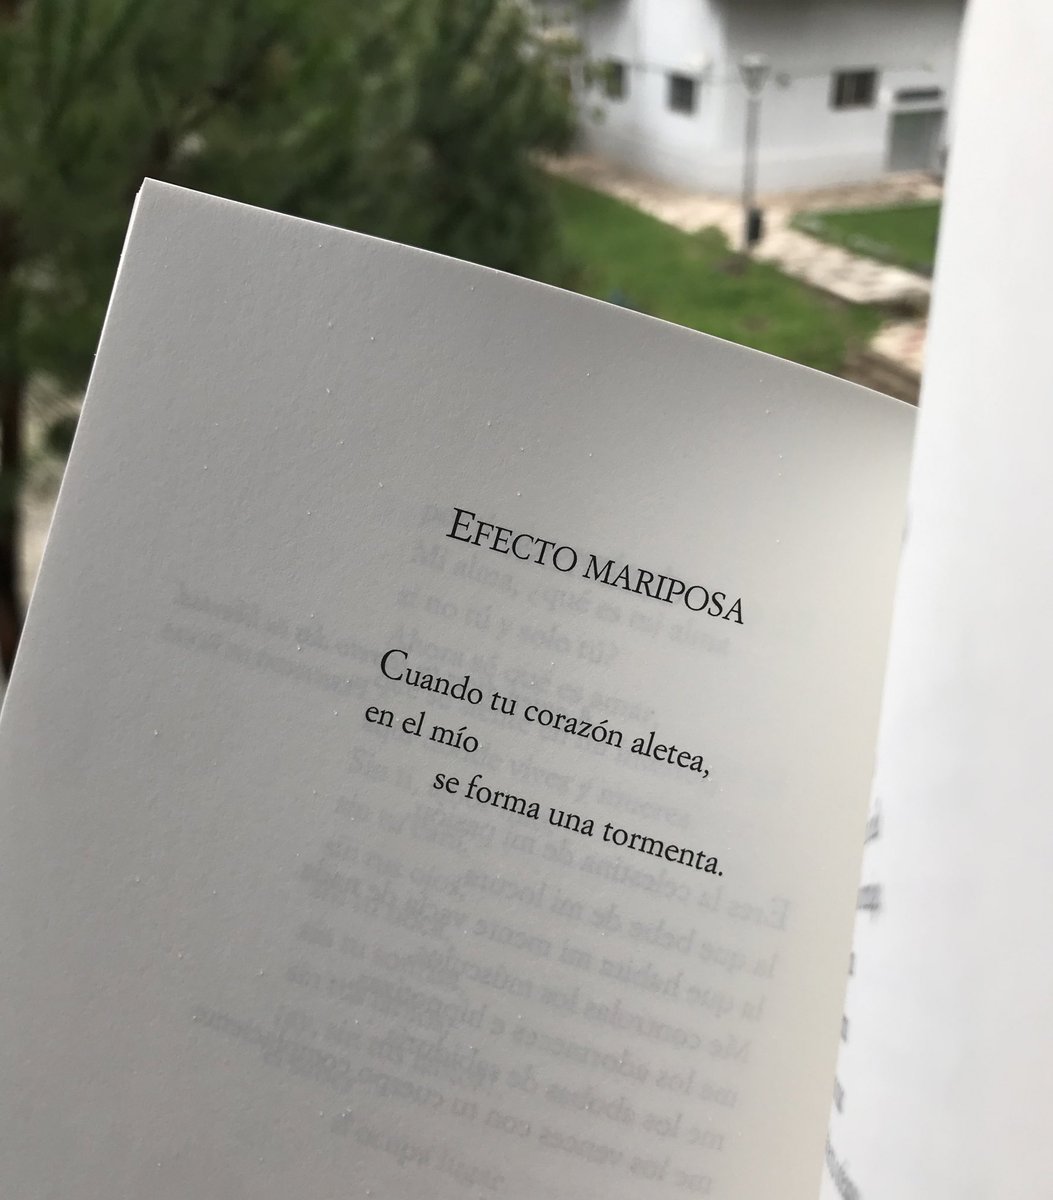 José María Andreo y los efectos del amor.